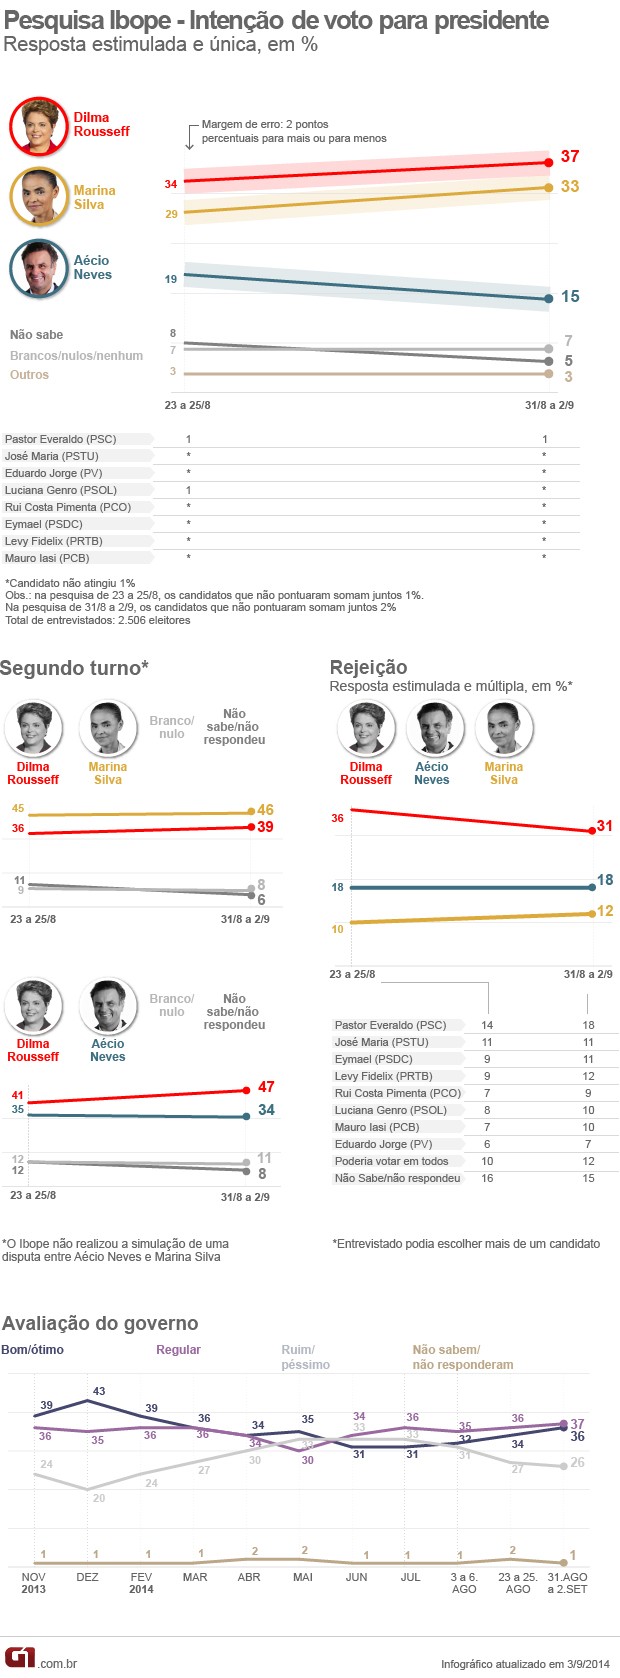 * Marina bate Dilma no 2° Turno e a Petista ainda tem a maior rejeição.